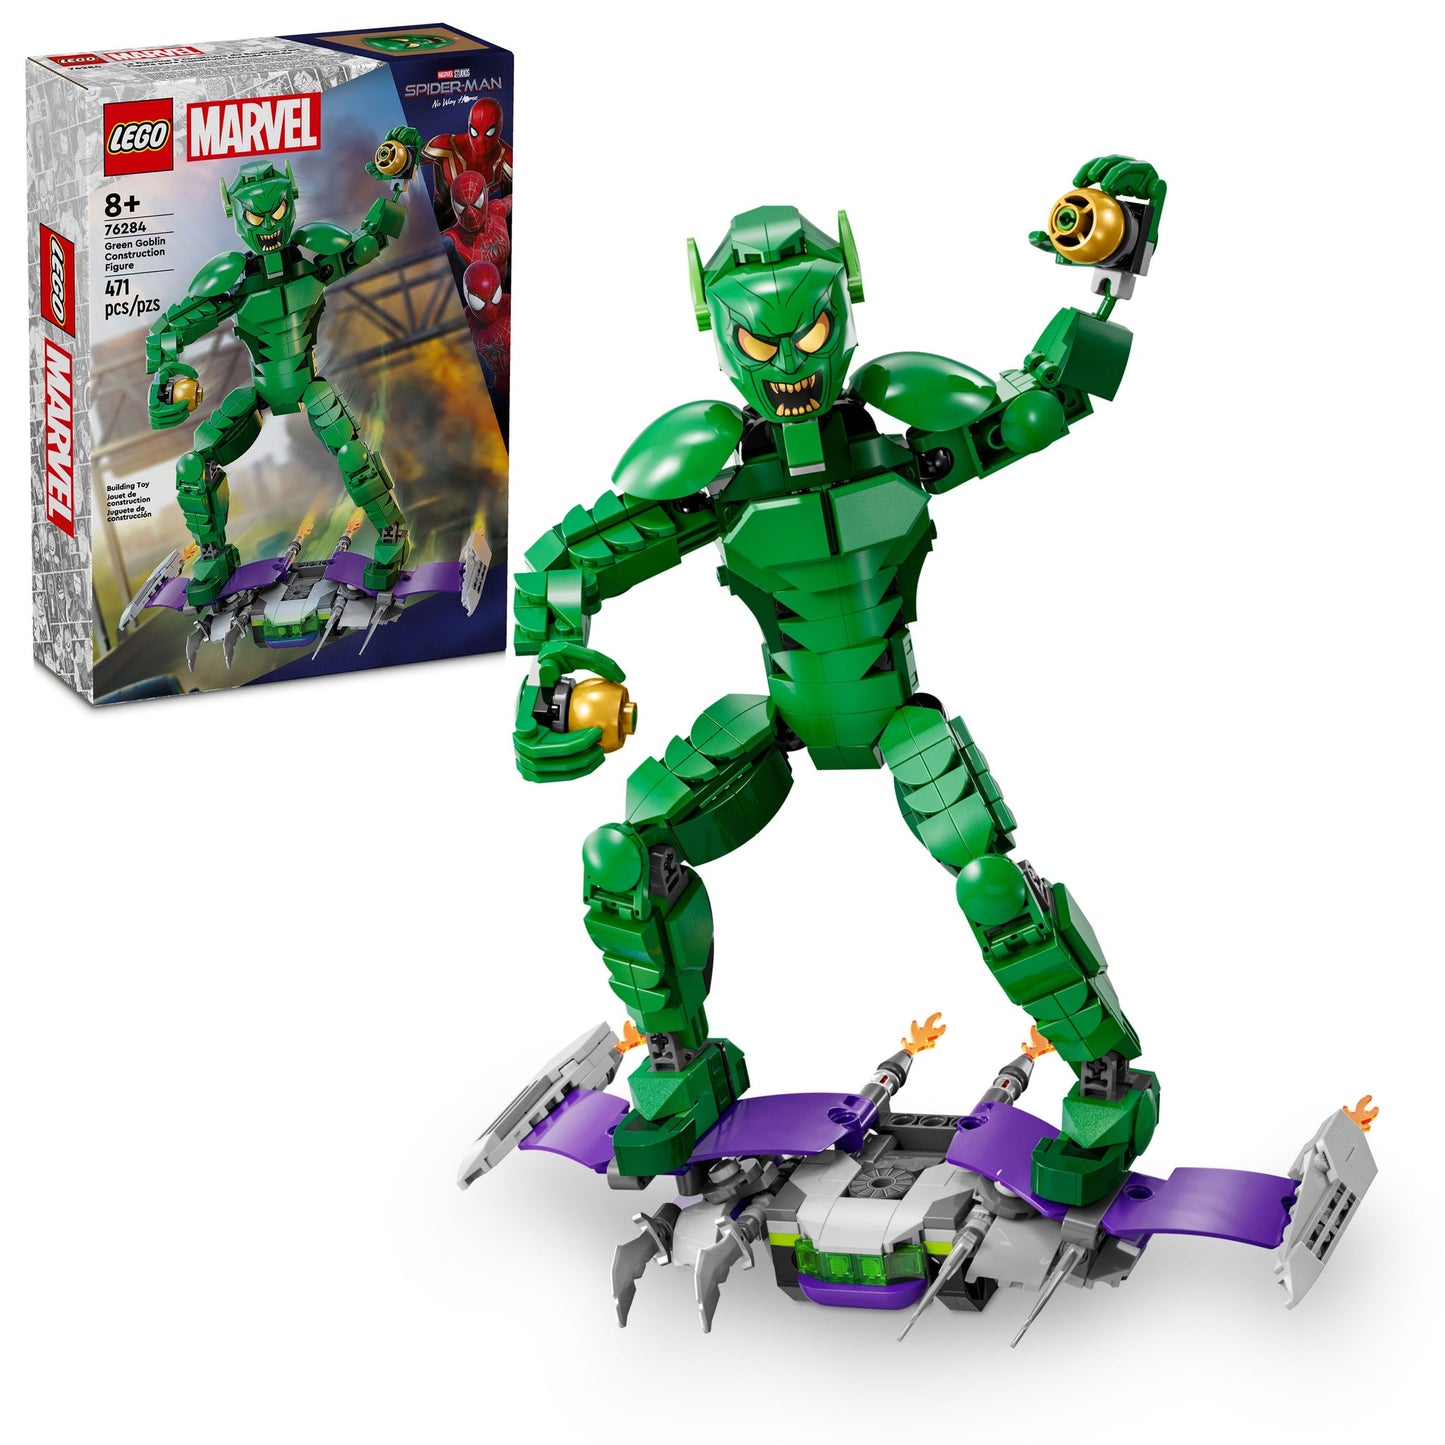 76284 Marvel Green Goblin Construction Figure